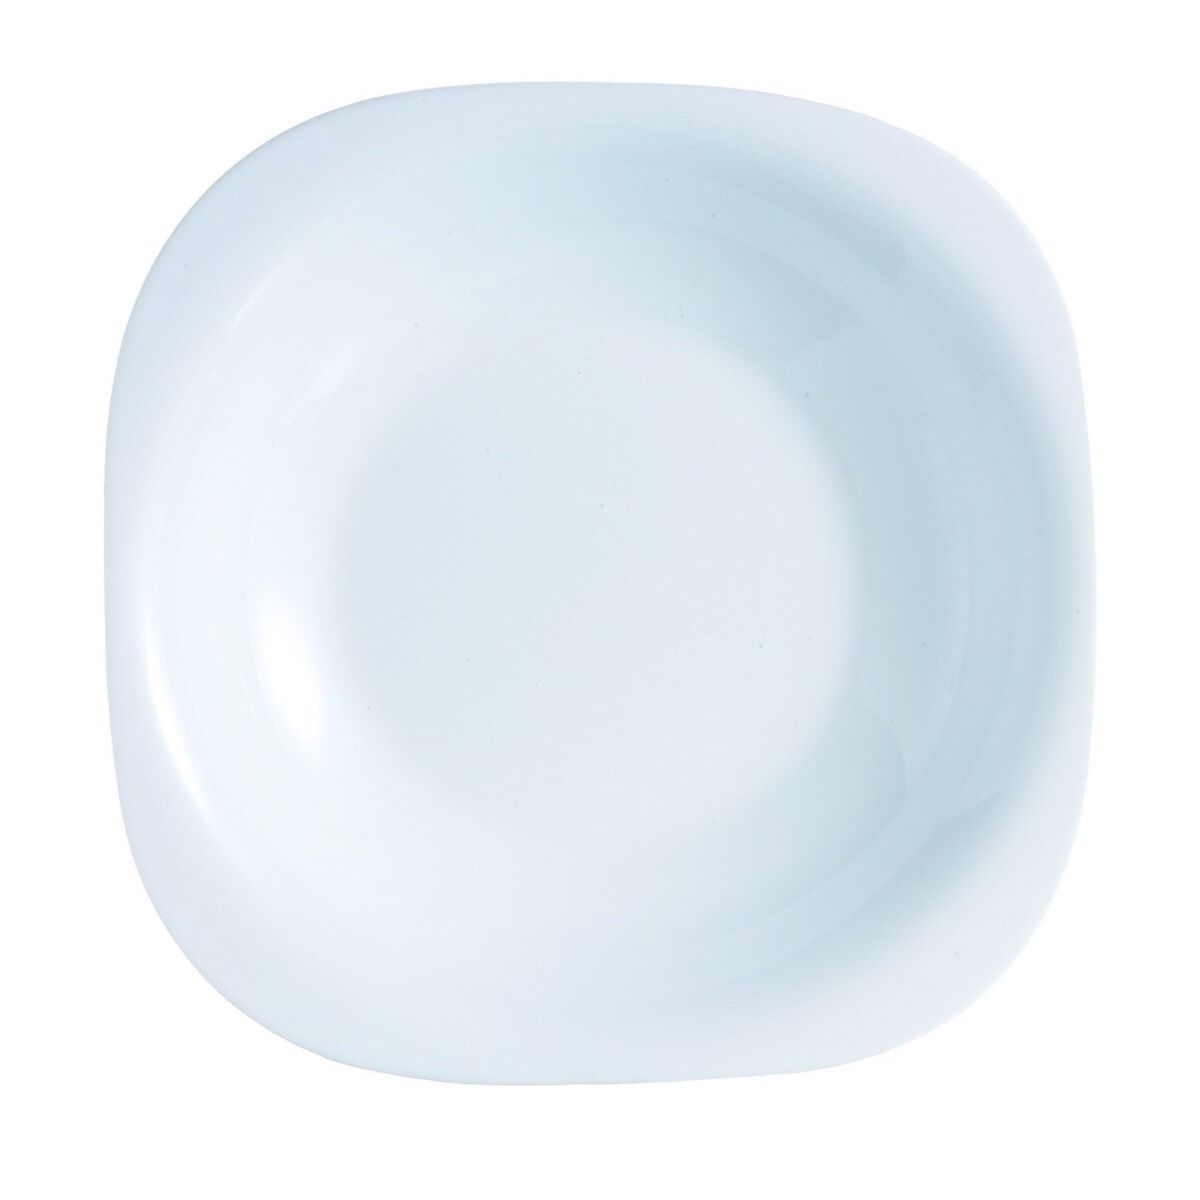 Farfurie adanca Carine 21 cm, opal, alb, Luminarc